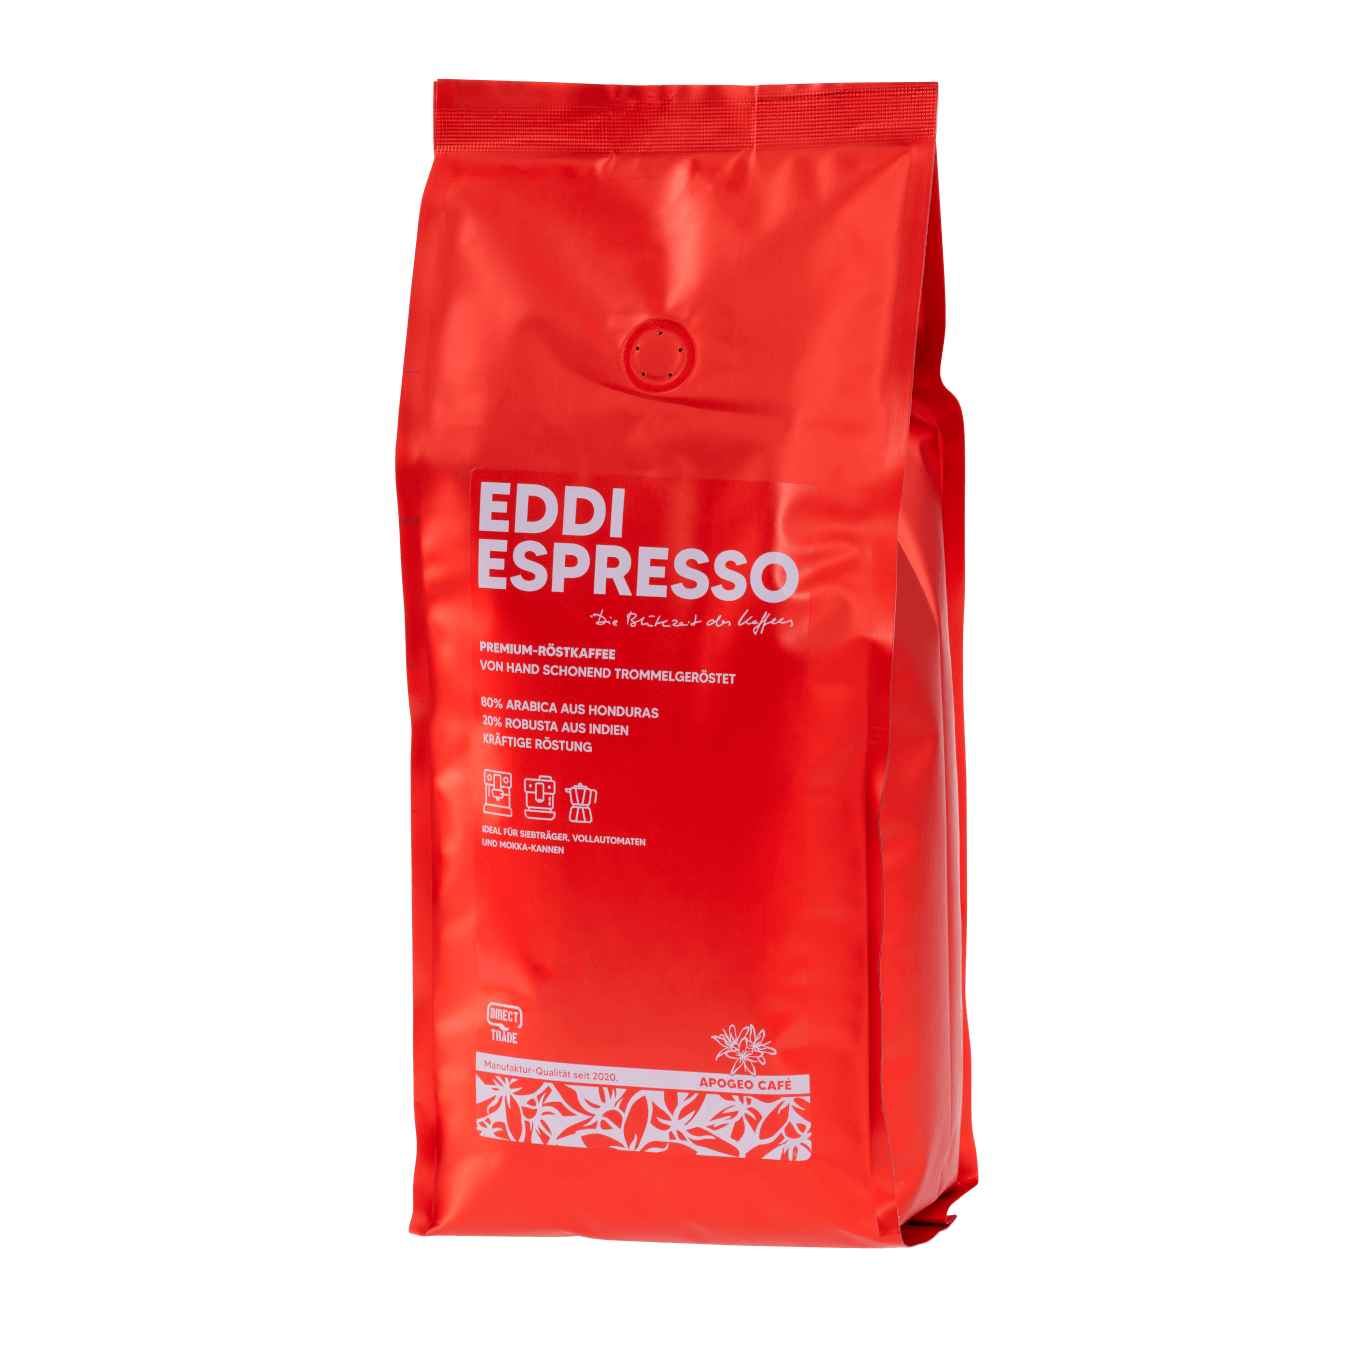 Erlebe Eddi Espresso – Dein Genussmoment mit unverwechselbarem Aroma. Kaffeeliebhaber finden in Eddi ihren idealen Begleiter